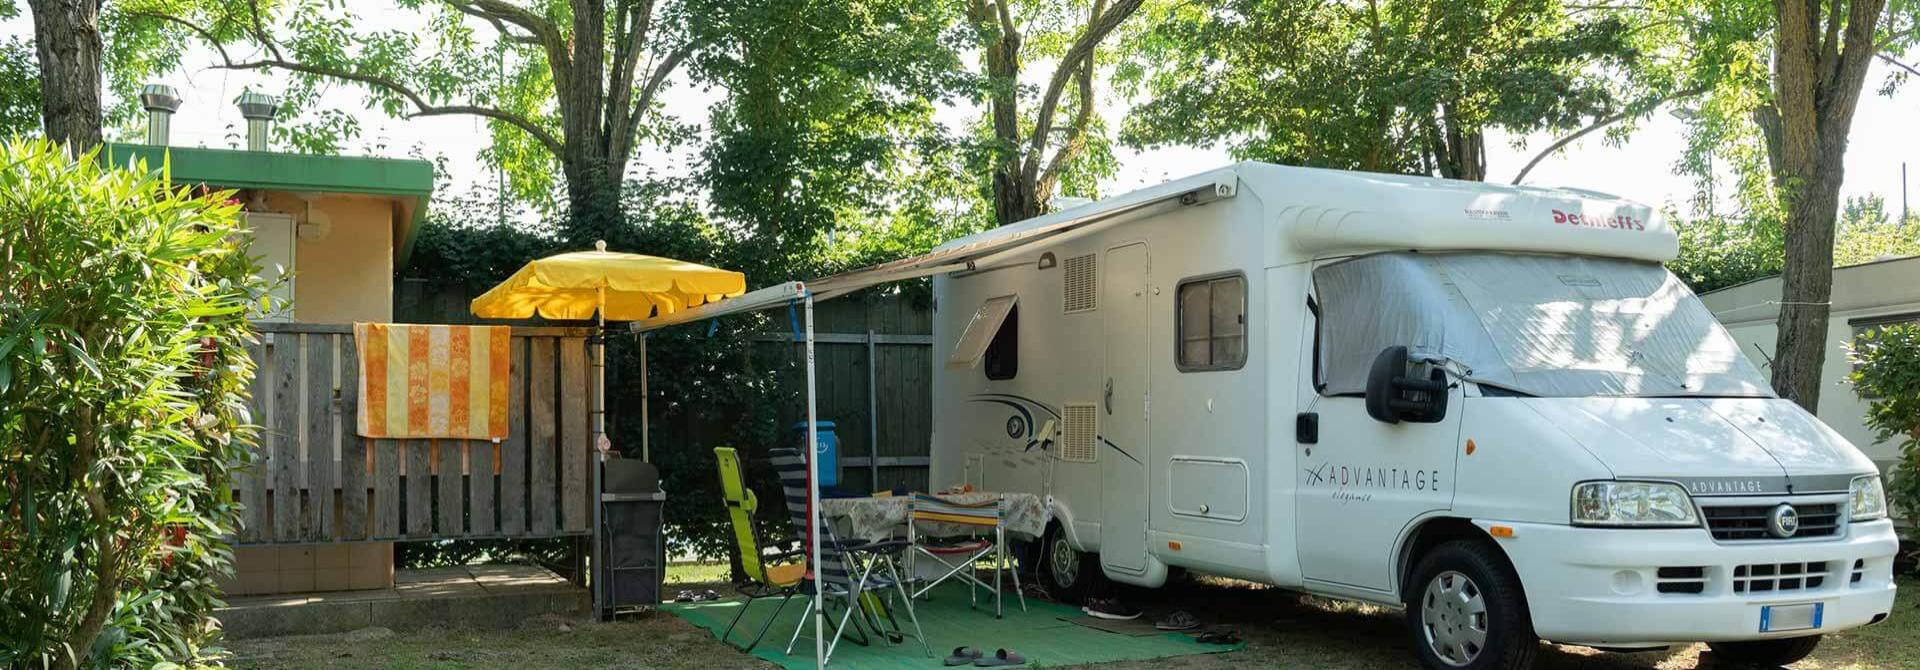 campingtahiti nl camping 026